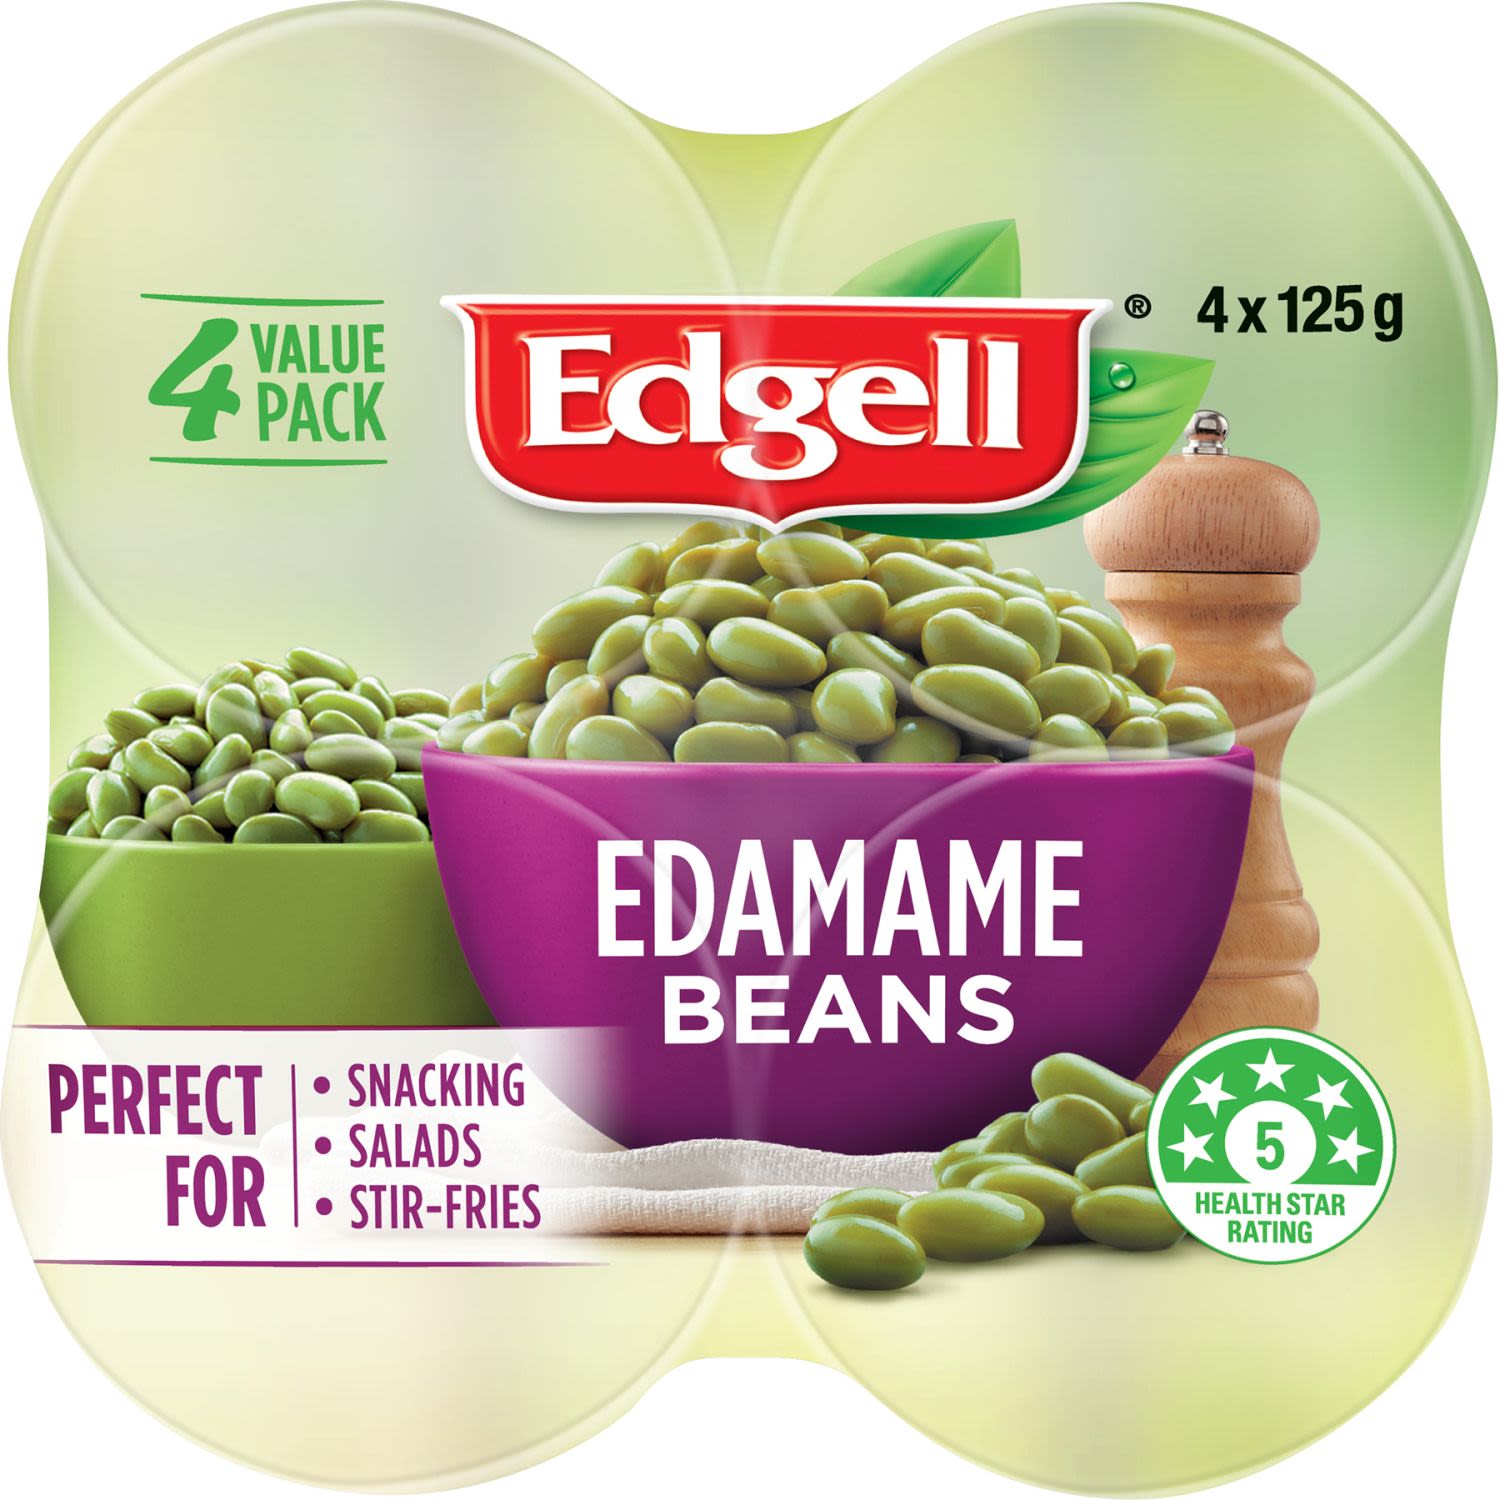 Edgell Edamame Bean Cans, 4 Each